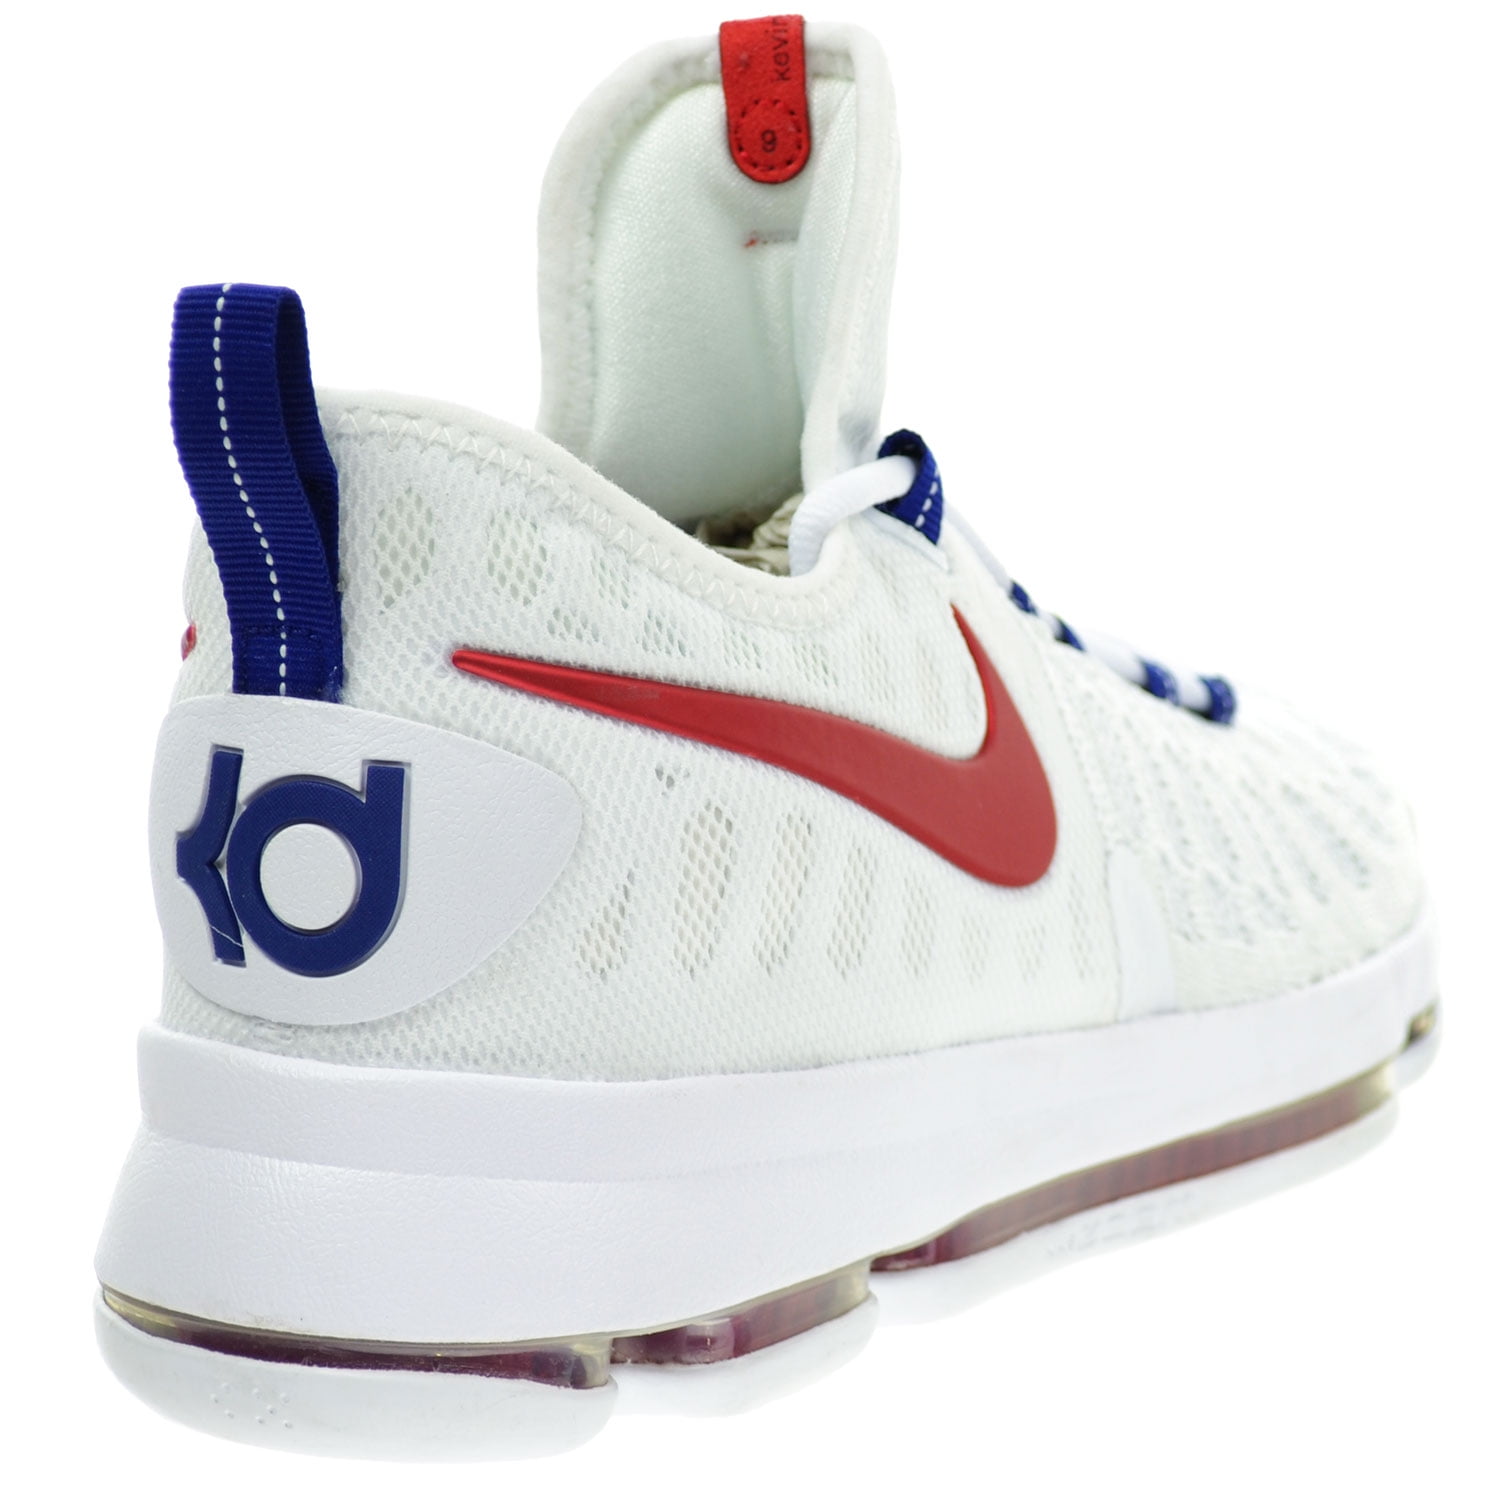 Bóveda Fundir Espacio cibernético Nike Zoom KD 9 "USA" Men's Shoes White/University Red/Blue 843392-160 -  Walmart.com